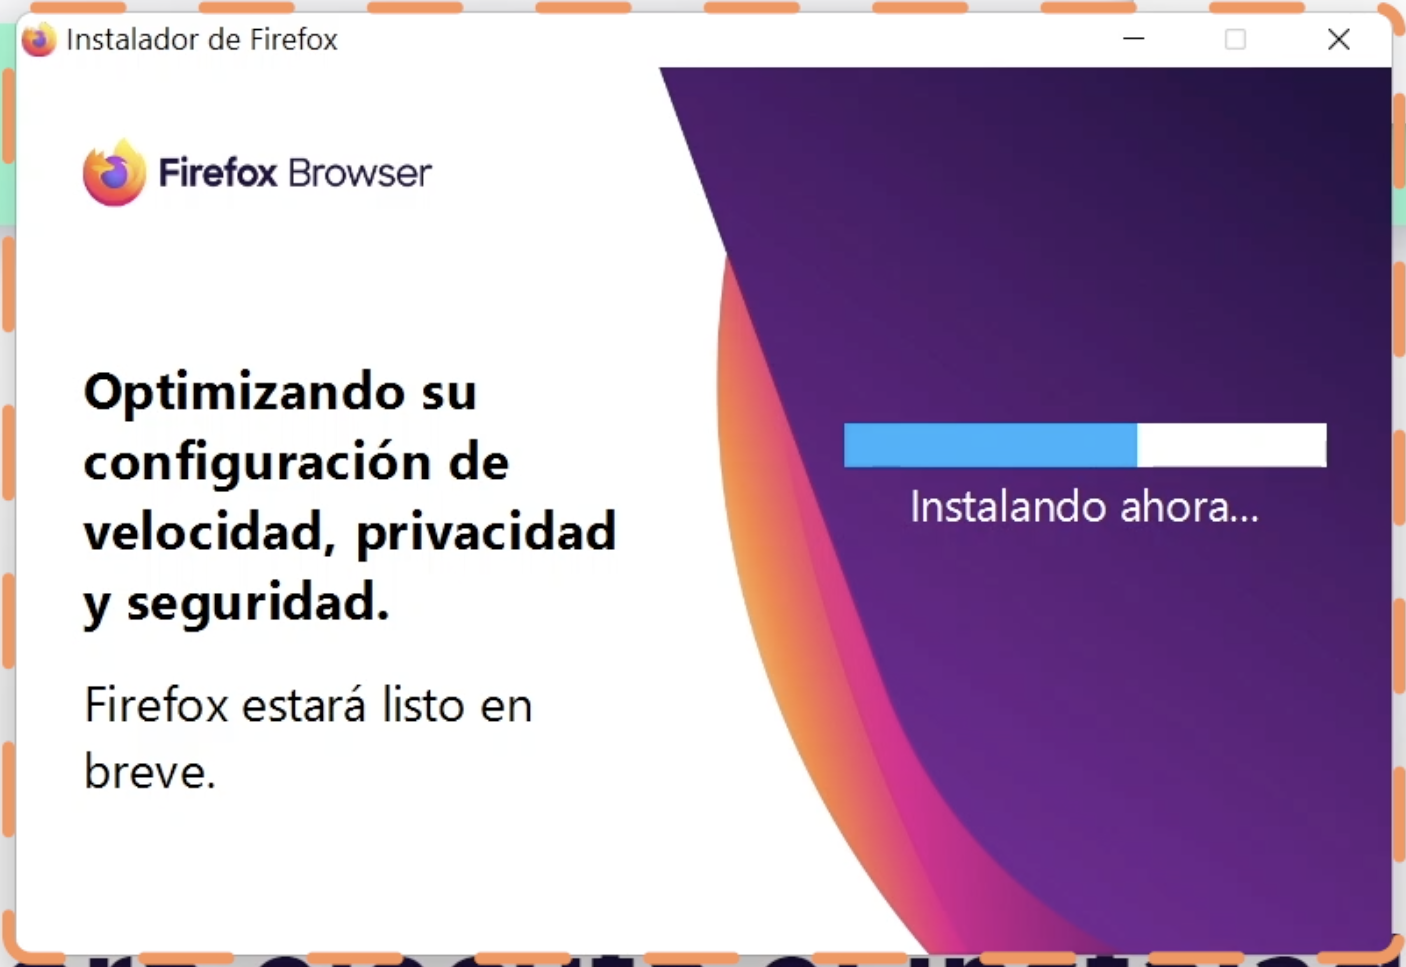 Asistente de instalación de Firefox